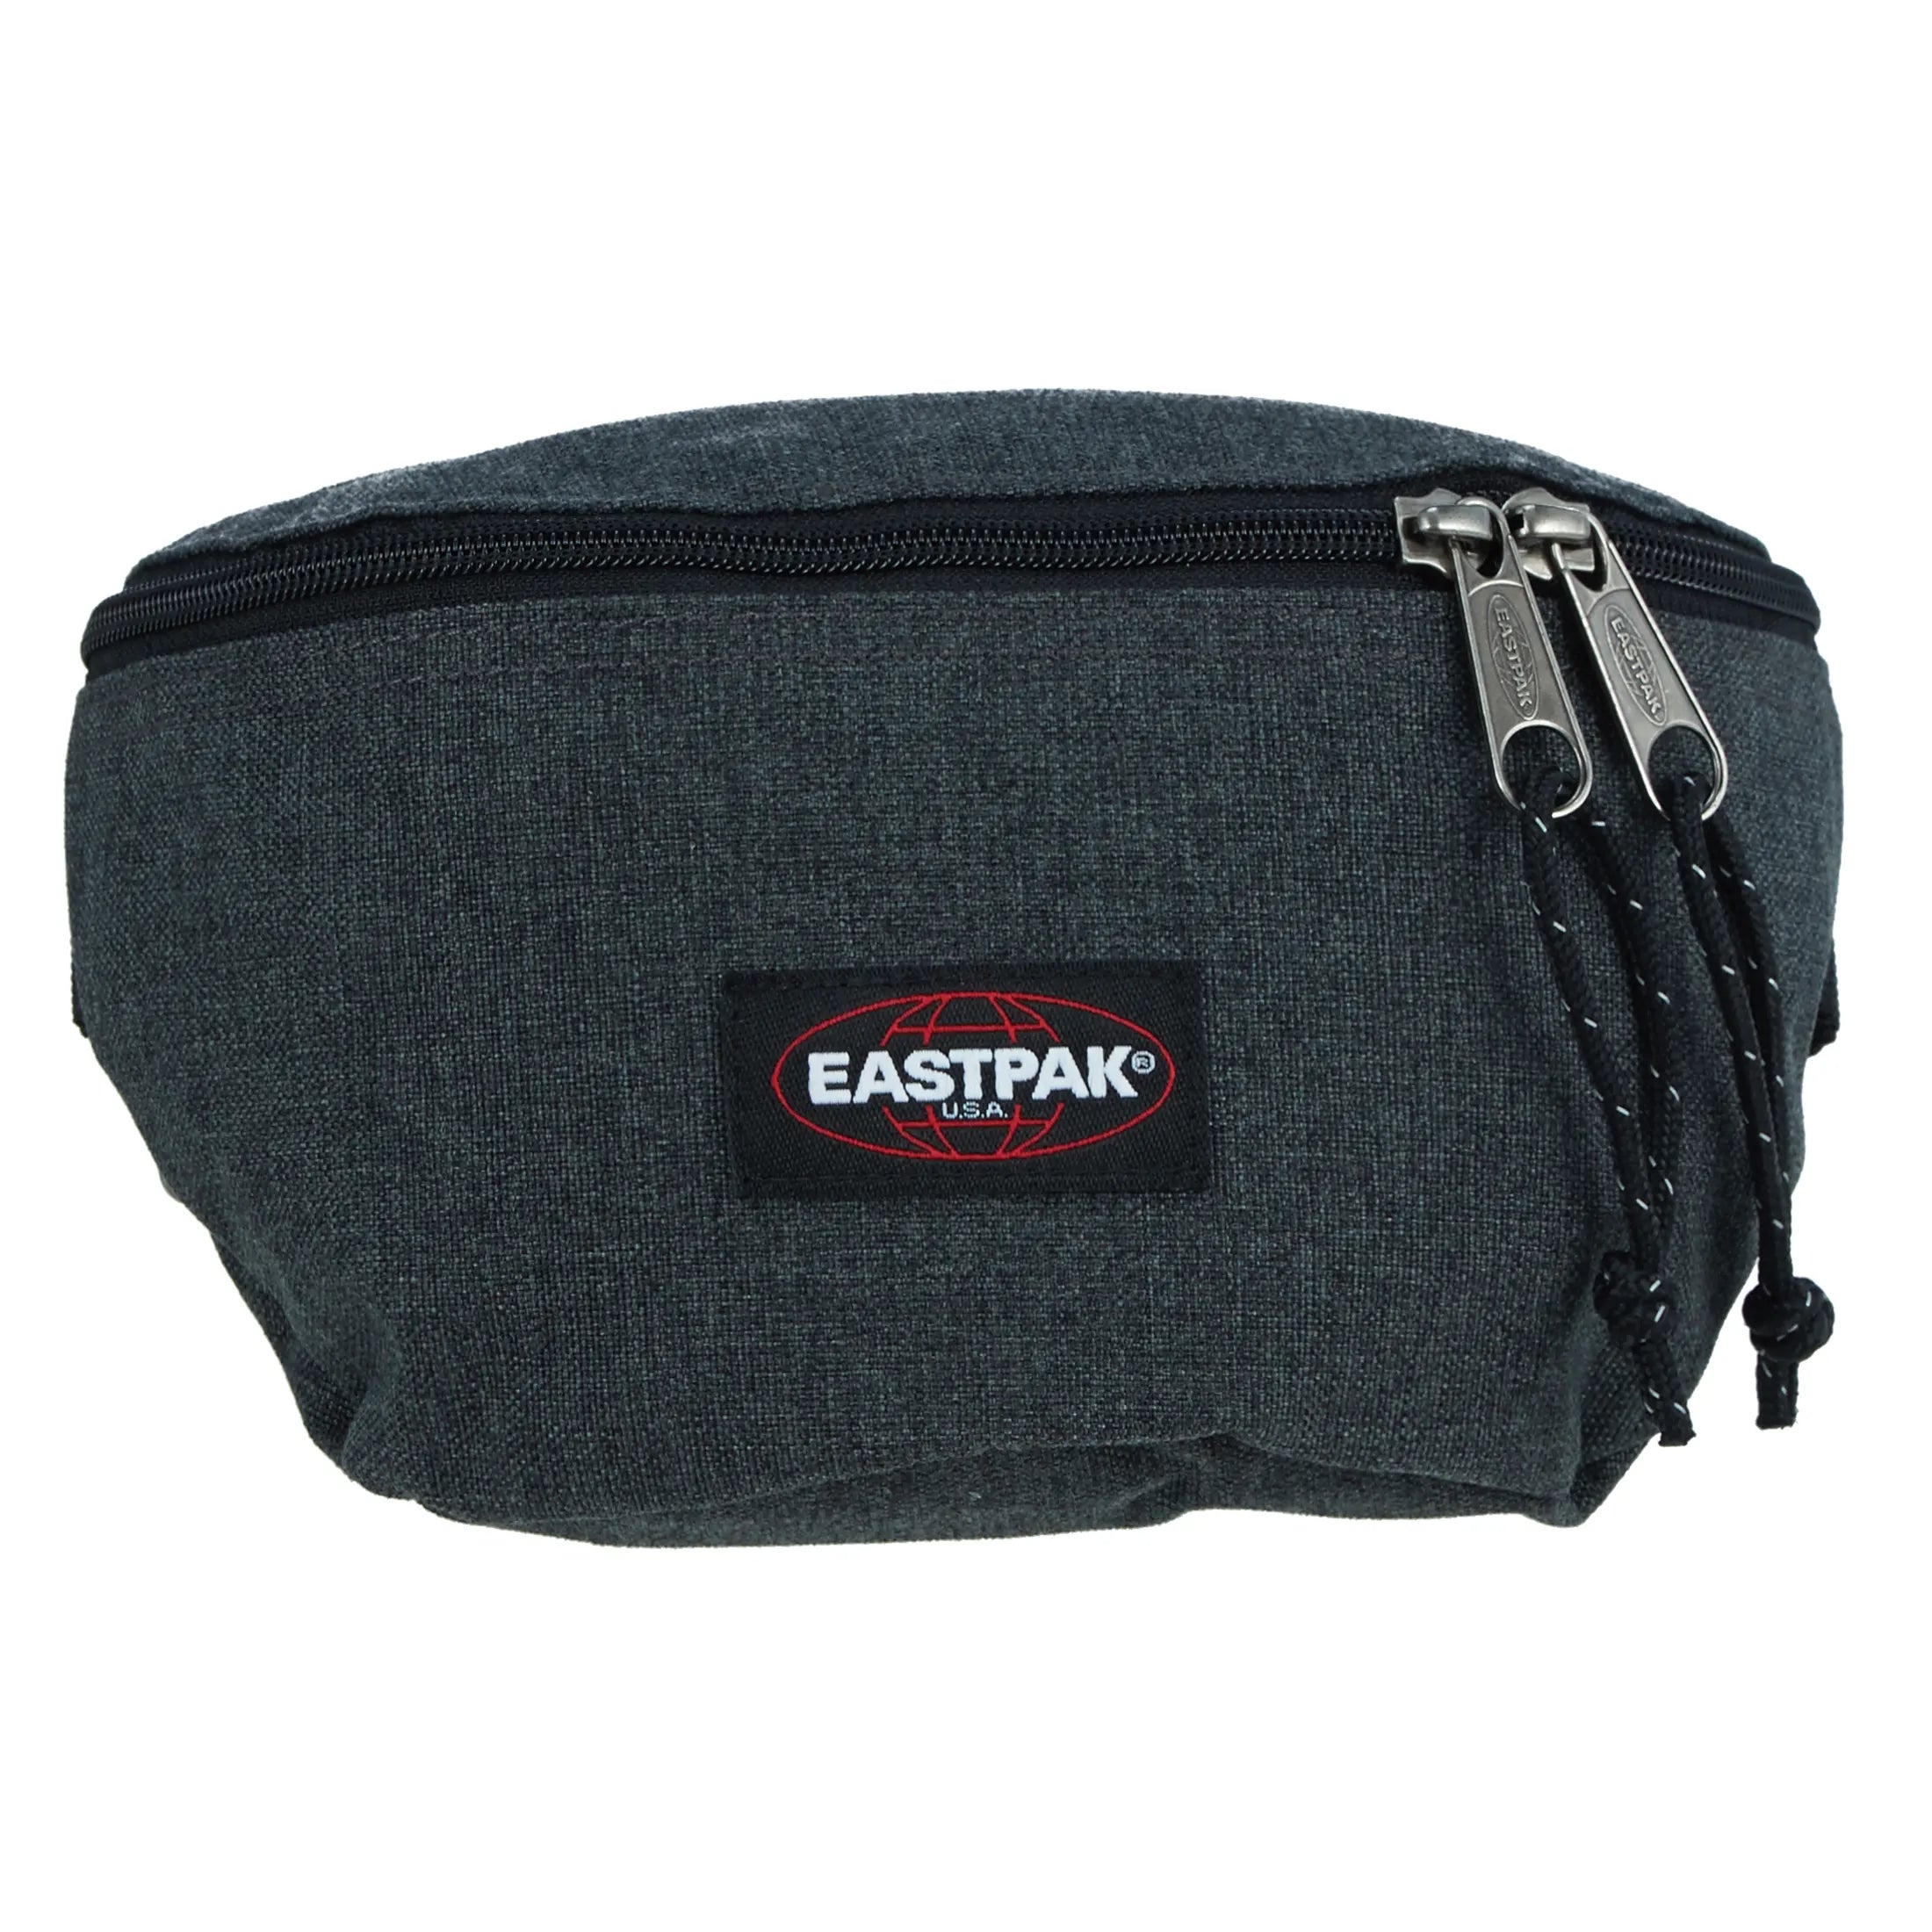 Eastpak Authentic Springer belt bag 23 cm - black denim